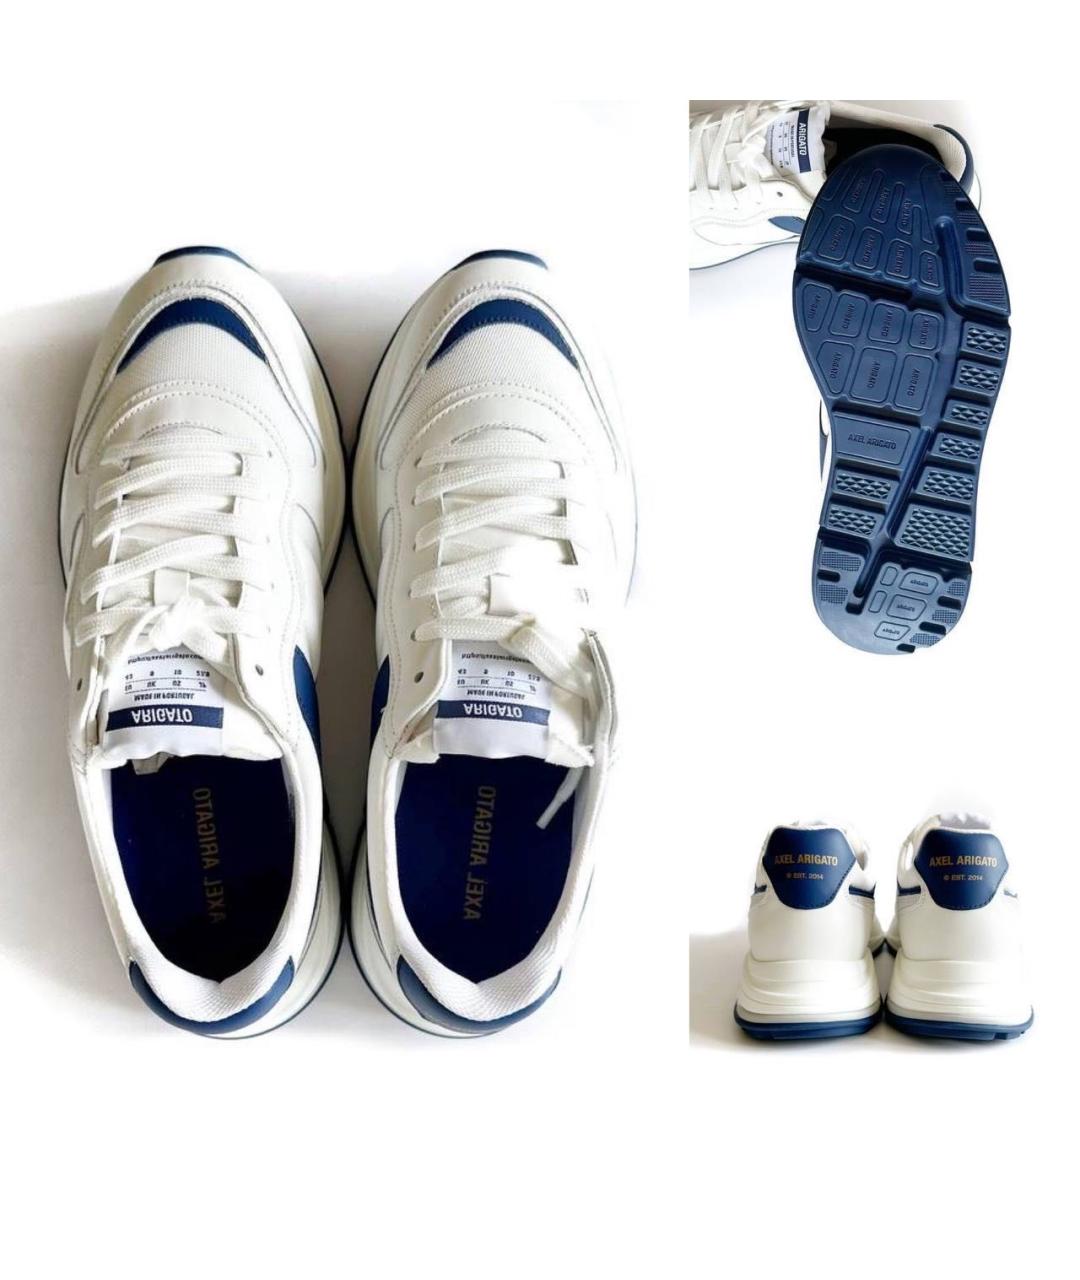 AXEL ARIGATO Белые низкие кроссовки / кеды, фото 3